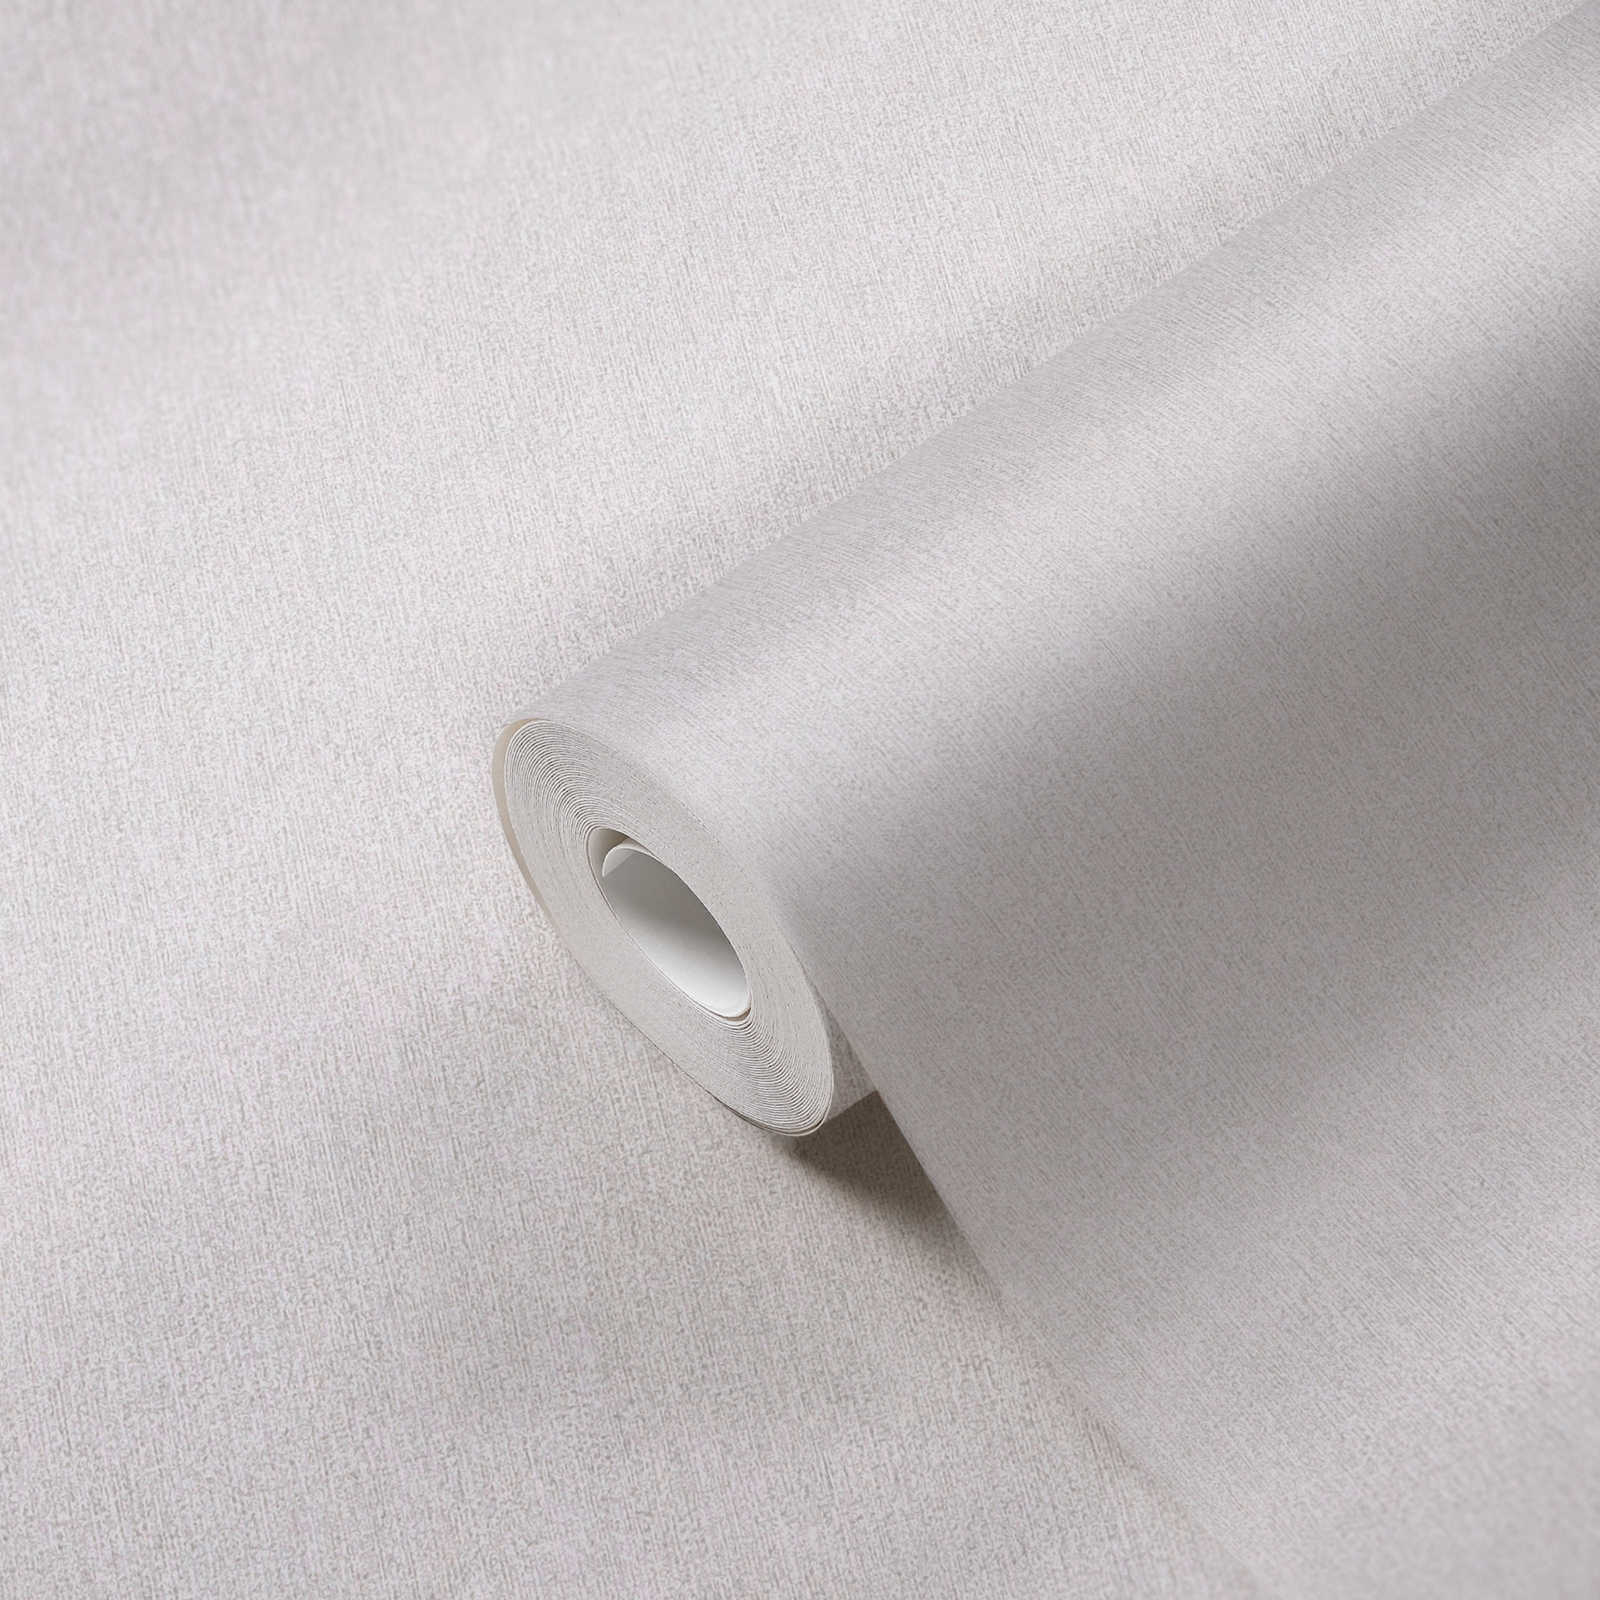             Carta da parati in tessuto non tessuto a tinta unita con effetto strutturato opaco - grigio, grigio chiaro
        